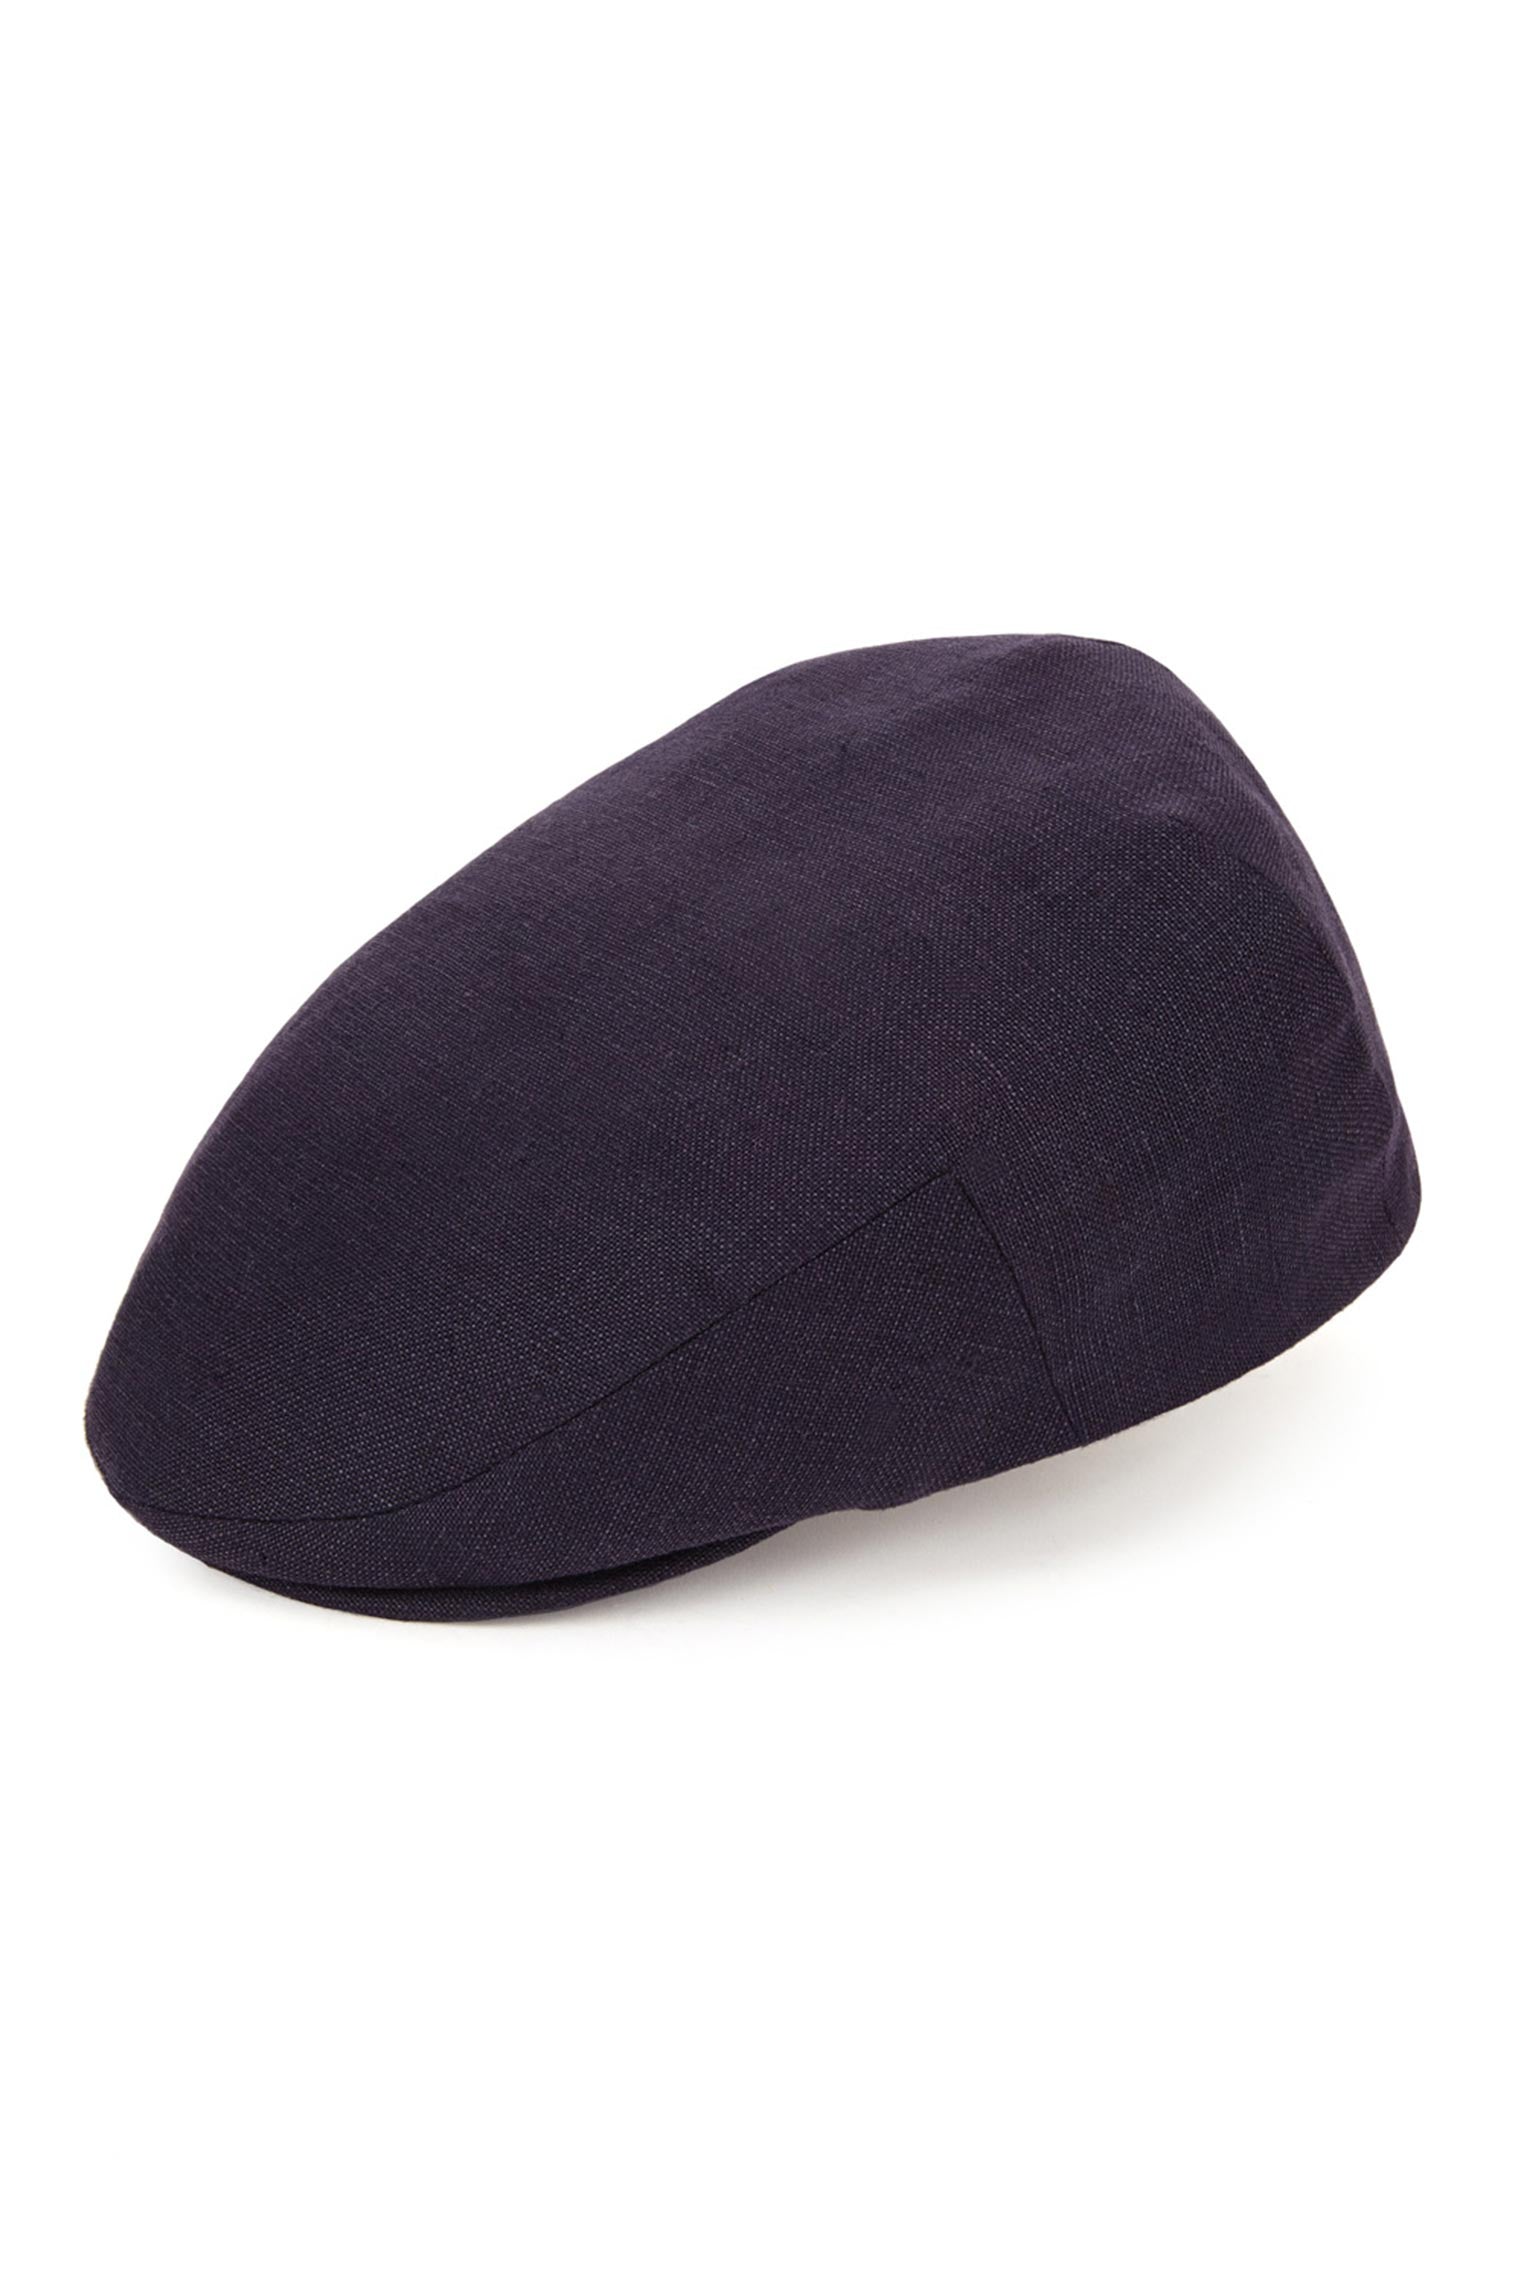 Florida Linen Flat Cap - Best Selling Hats - Lock & Co. Hatters London UK